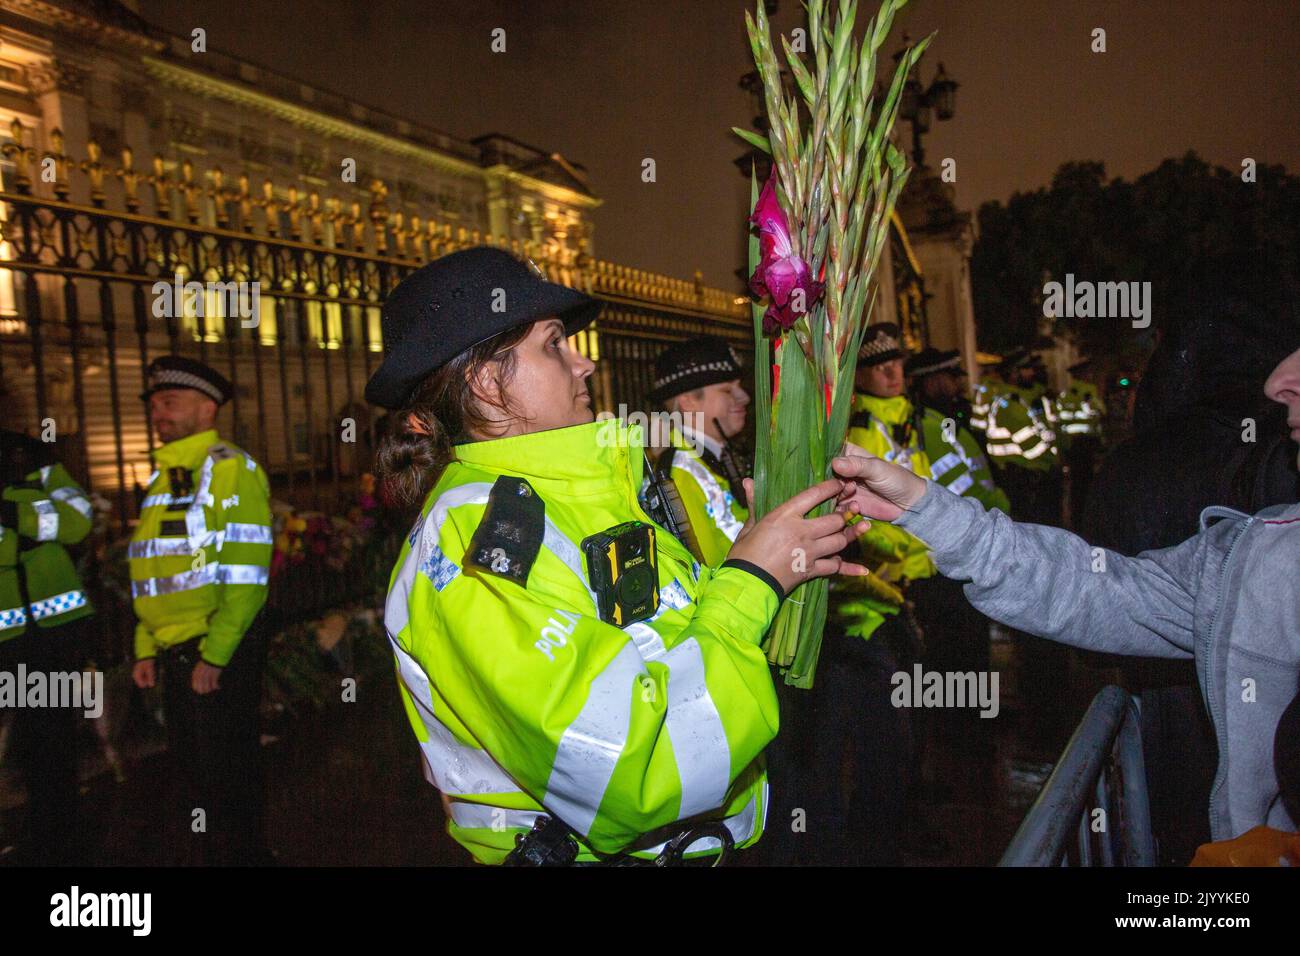 LONDRES, ANGLETERRE - SEPTEMBRE 08: Les membres du public commencent à se rassembler à l'extérieur de Buckingham Palace pour déposer des fleurs et rendre hommage après la mort aujourd'hui de la reine Elizabeth, crédit: Horst A. Friedrichs Alay Live News Banque D'Images